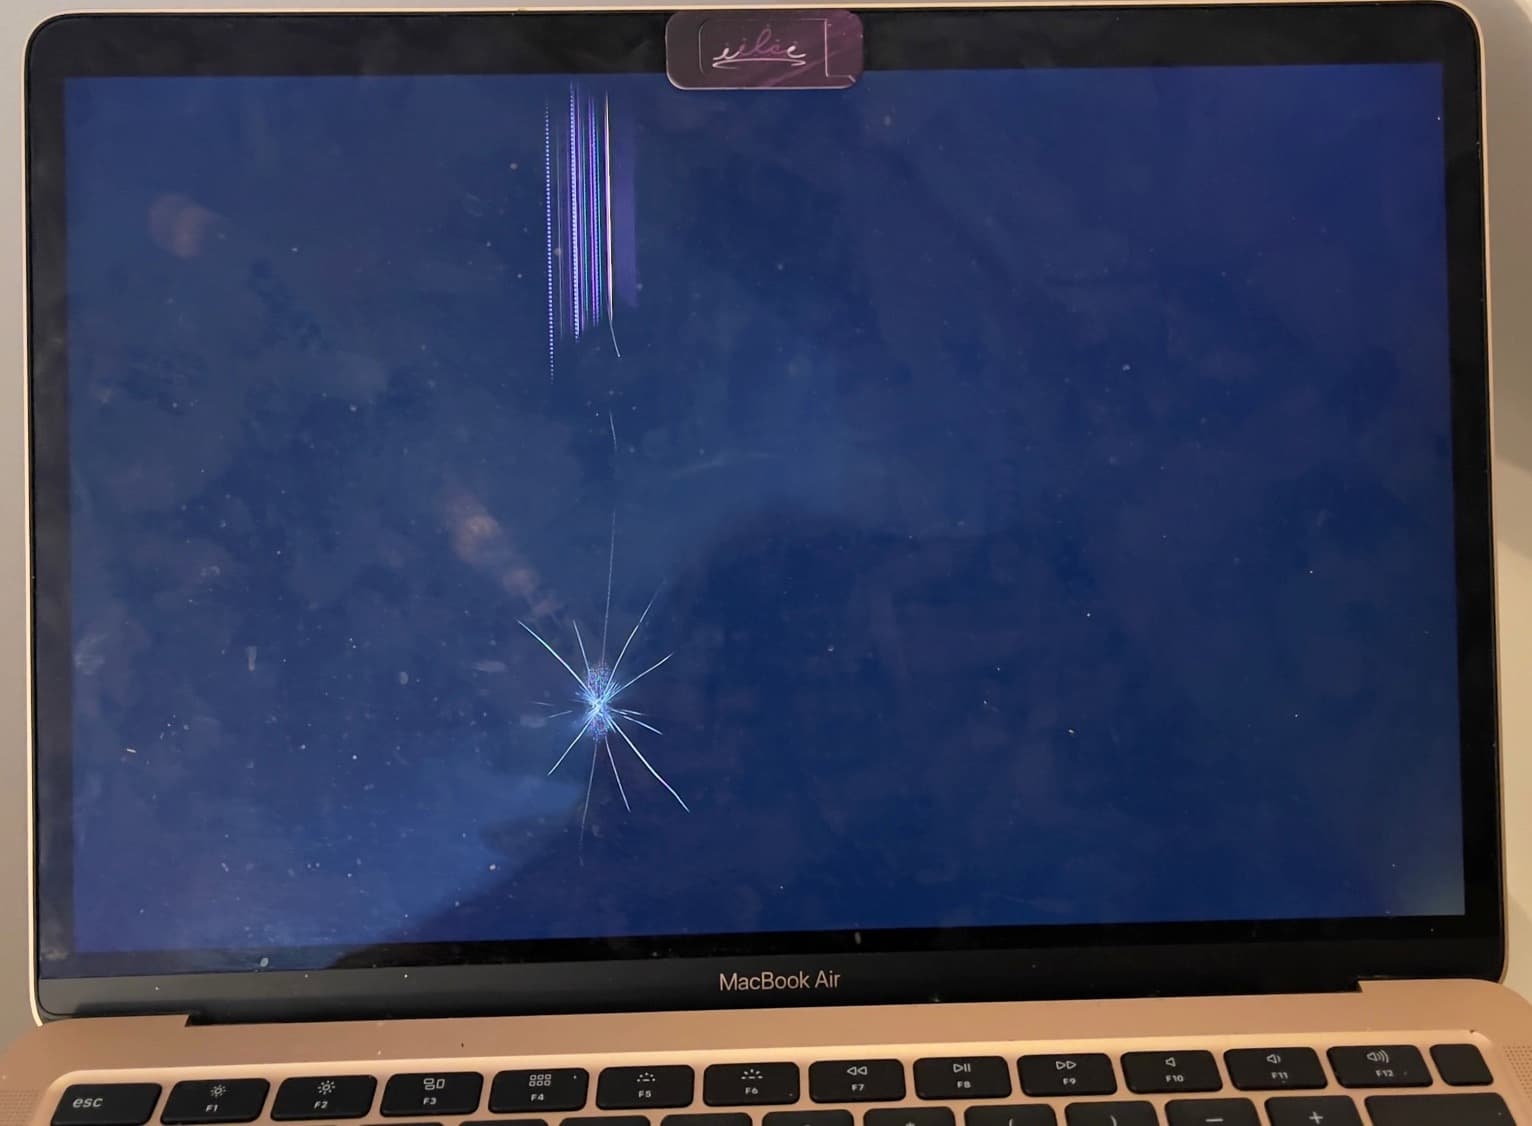 Cracked Black Screen on MacBook Air